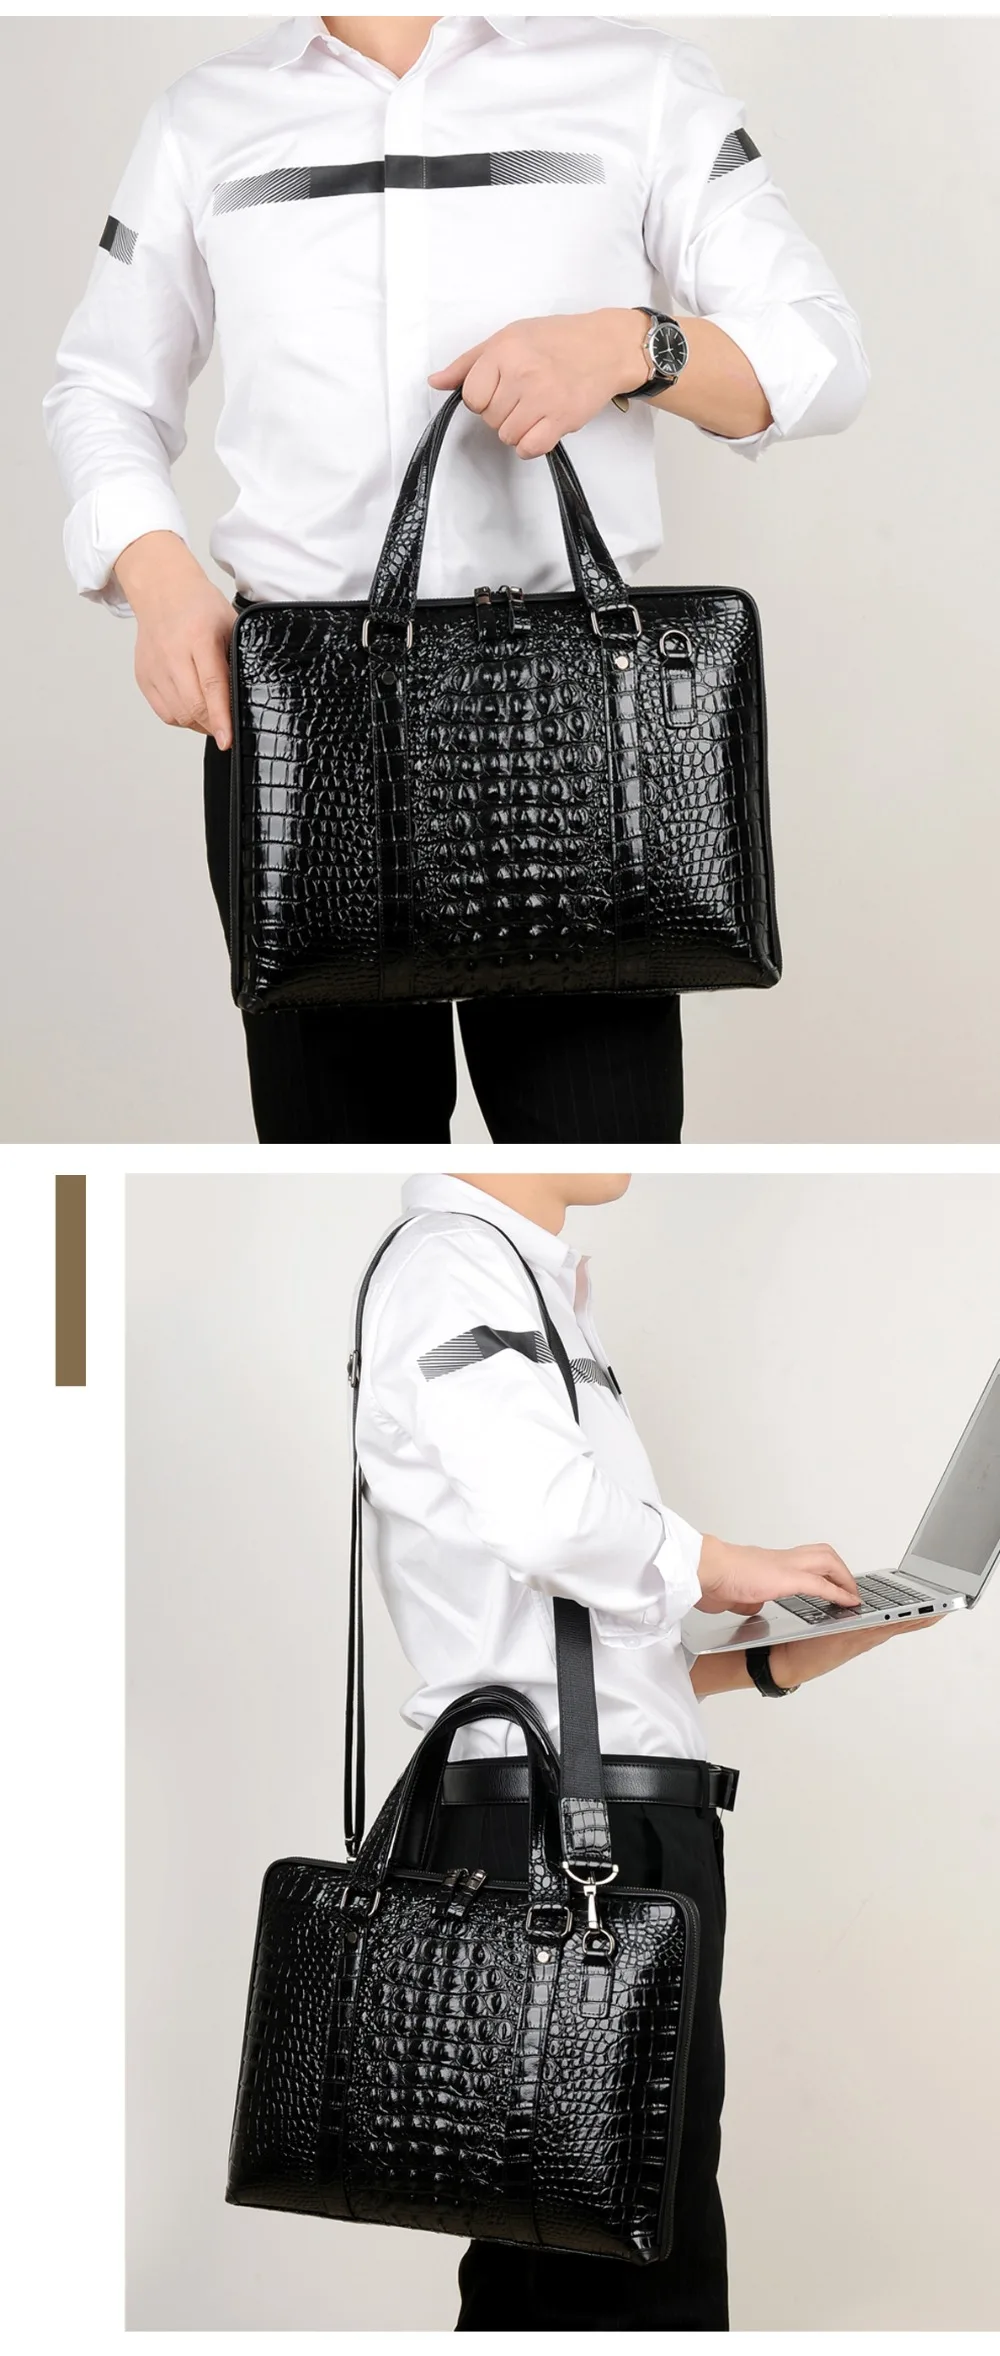 Пурани мужской Бизнес Сумка Высокое качество кожа Для мужчин Портфели сумки натуральная кожа крокодила Мода ноутбук сумка сумки